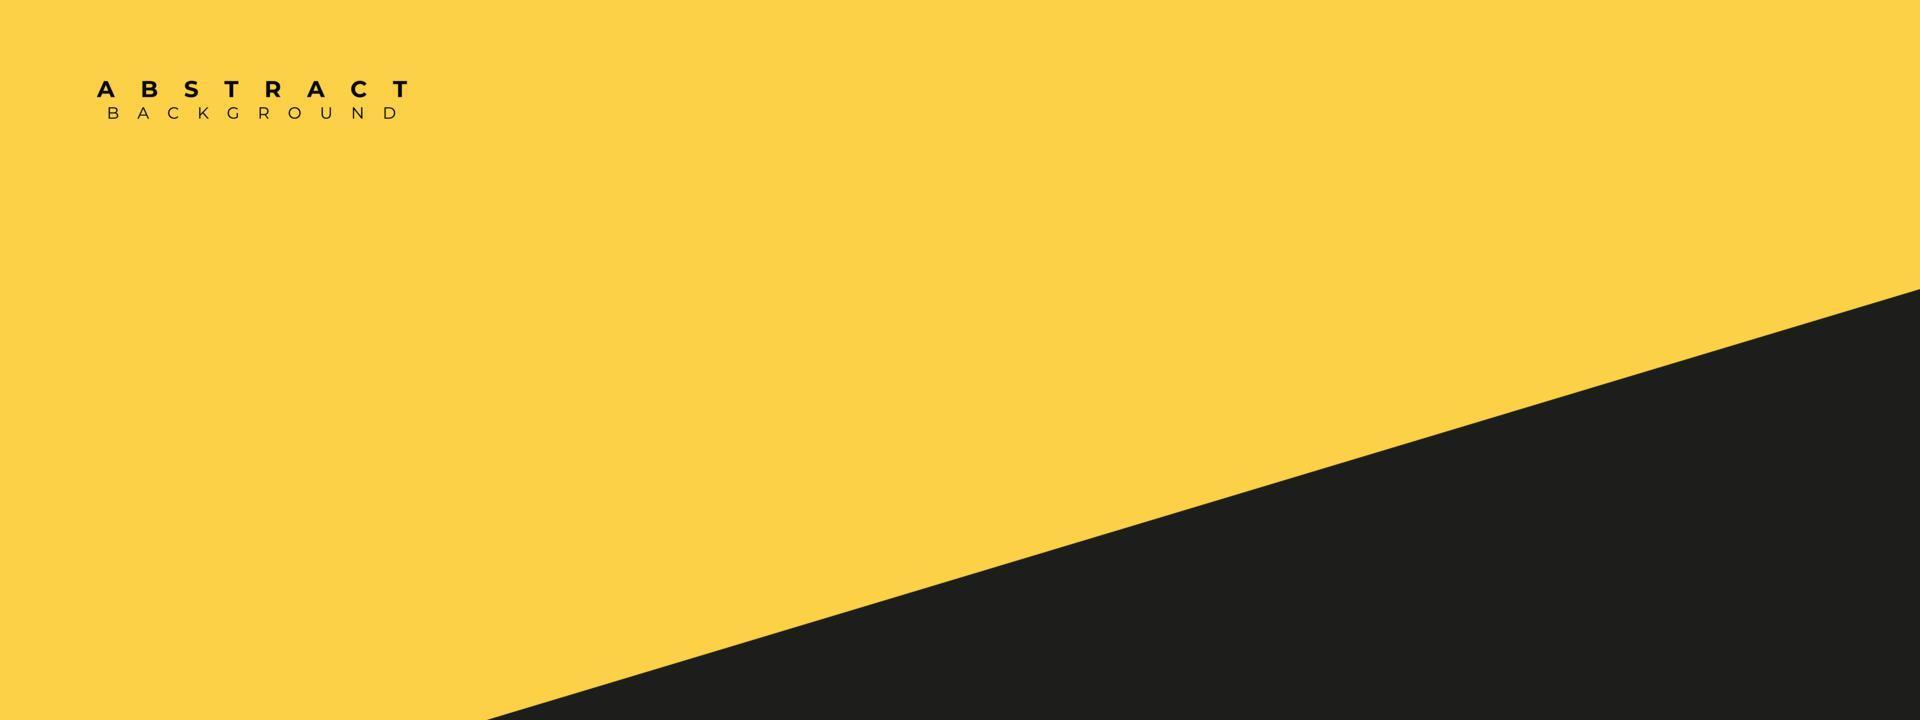 projeto abstrato amarelo e preto do fundo. design moderno de fundo amarelo fresco vetor